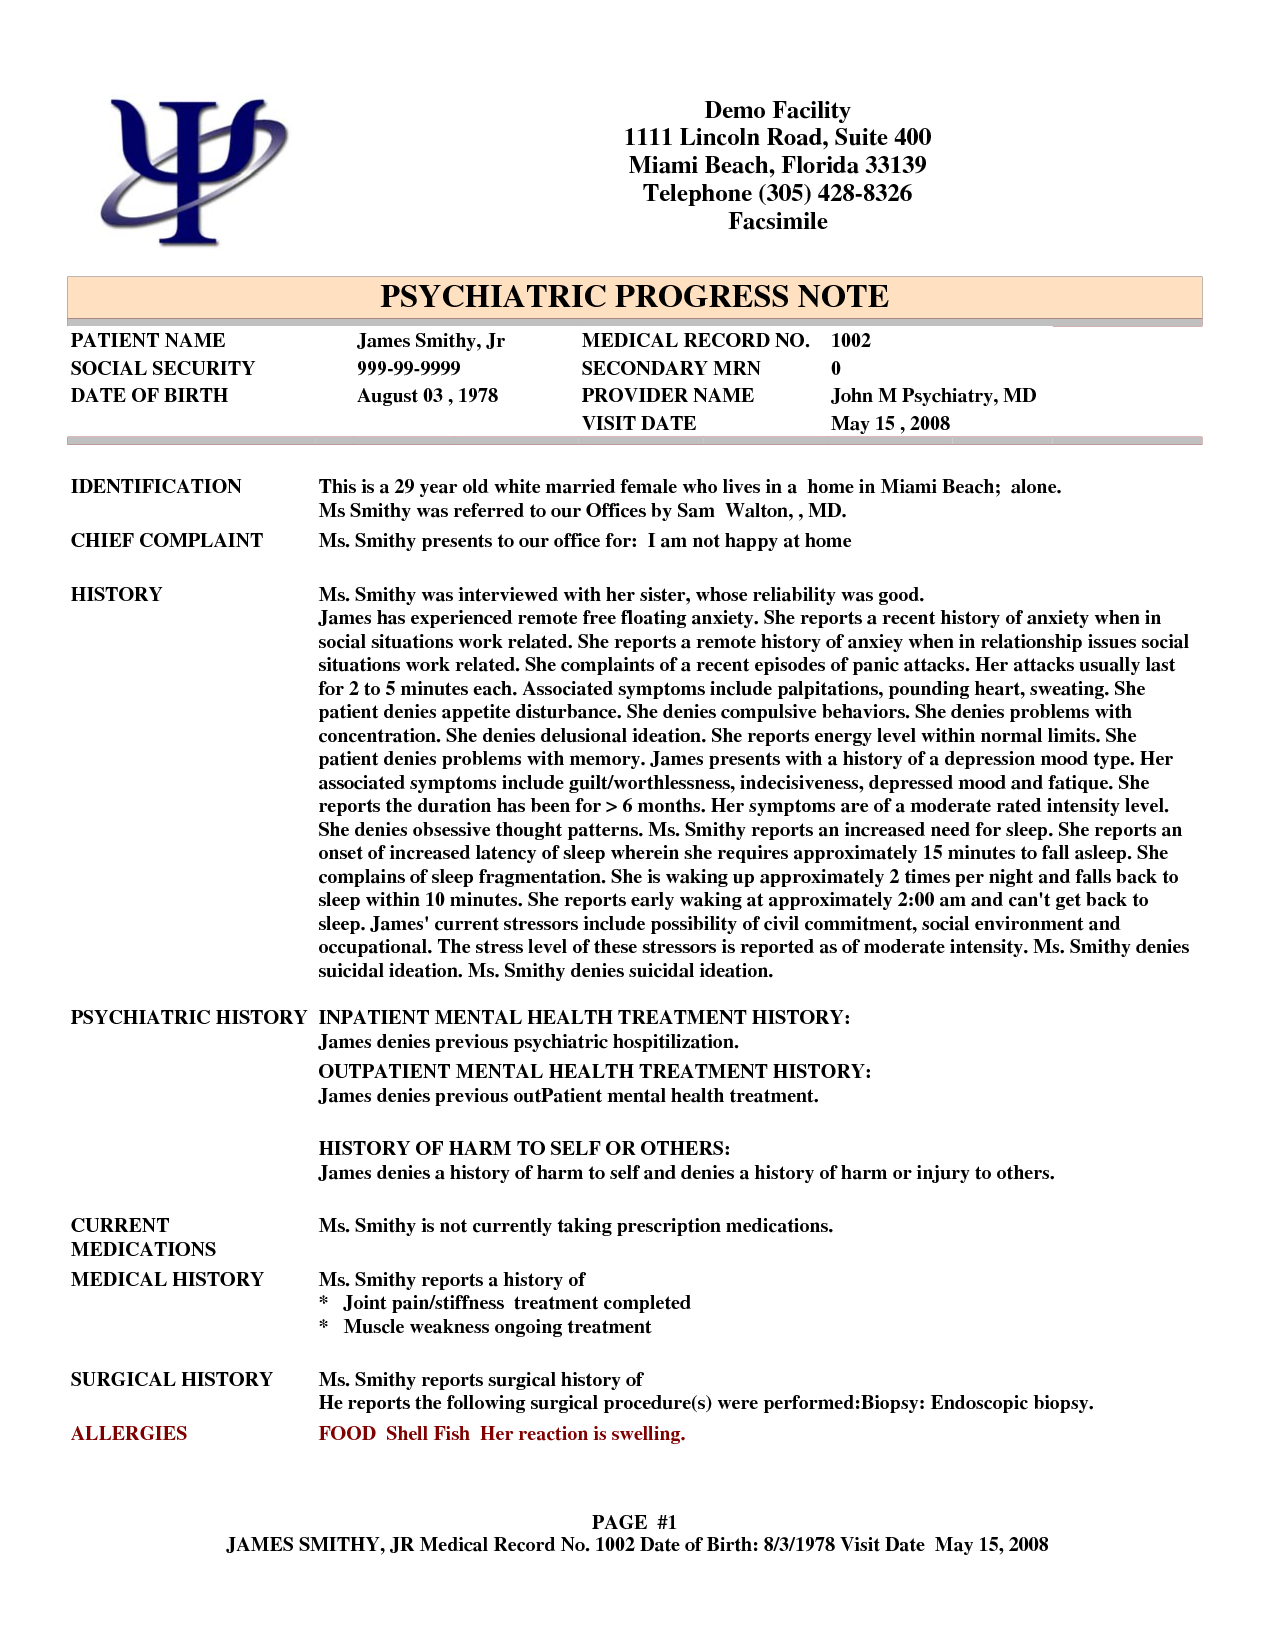 psychotherapy progress note template pdf   Physic.minimalistics.co